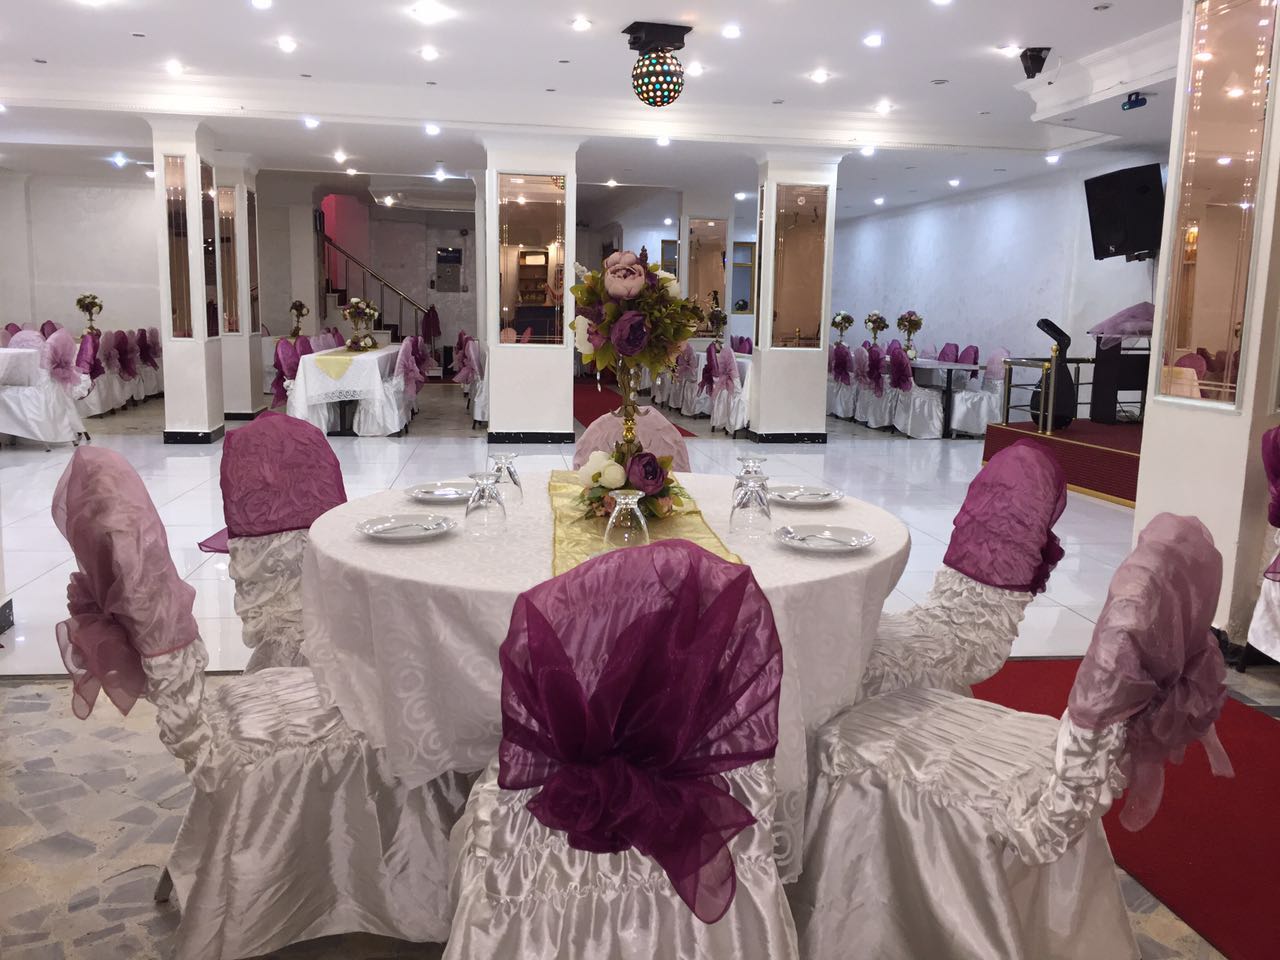 AVCILAR da Kaliteli ve Uygun Fiyatlı Düğün – Kına salonu